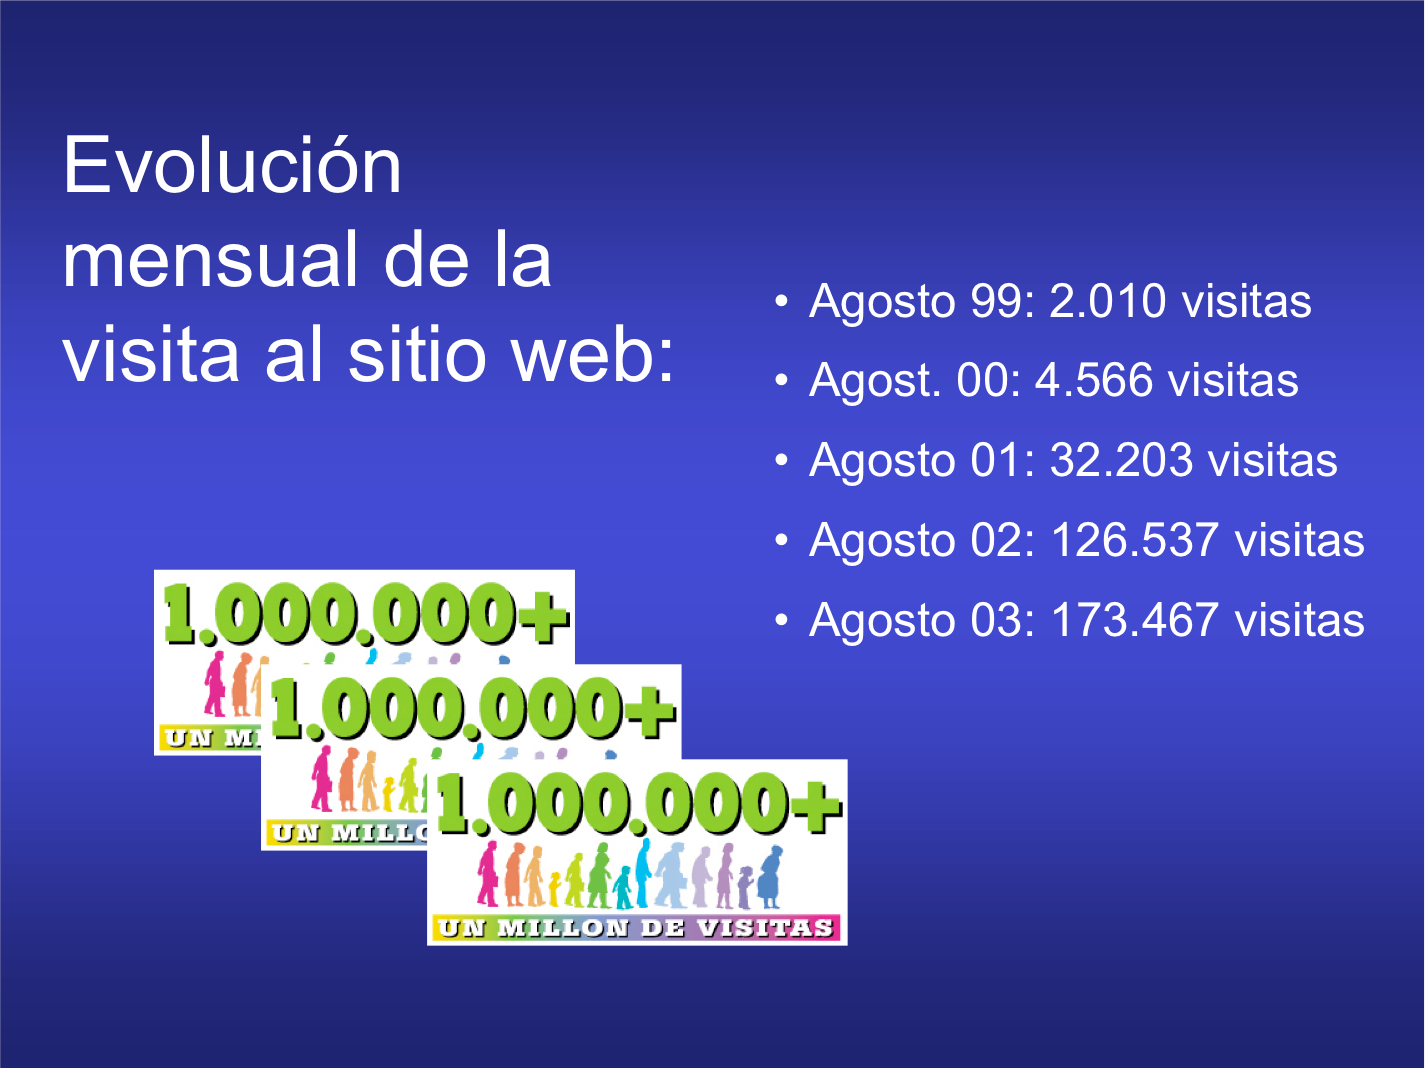 Evolución mensual de la visita al sitio web: Agosto 99: 2.010 visitas Agost. 00: 4.